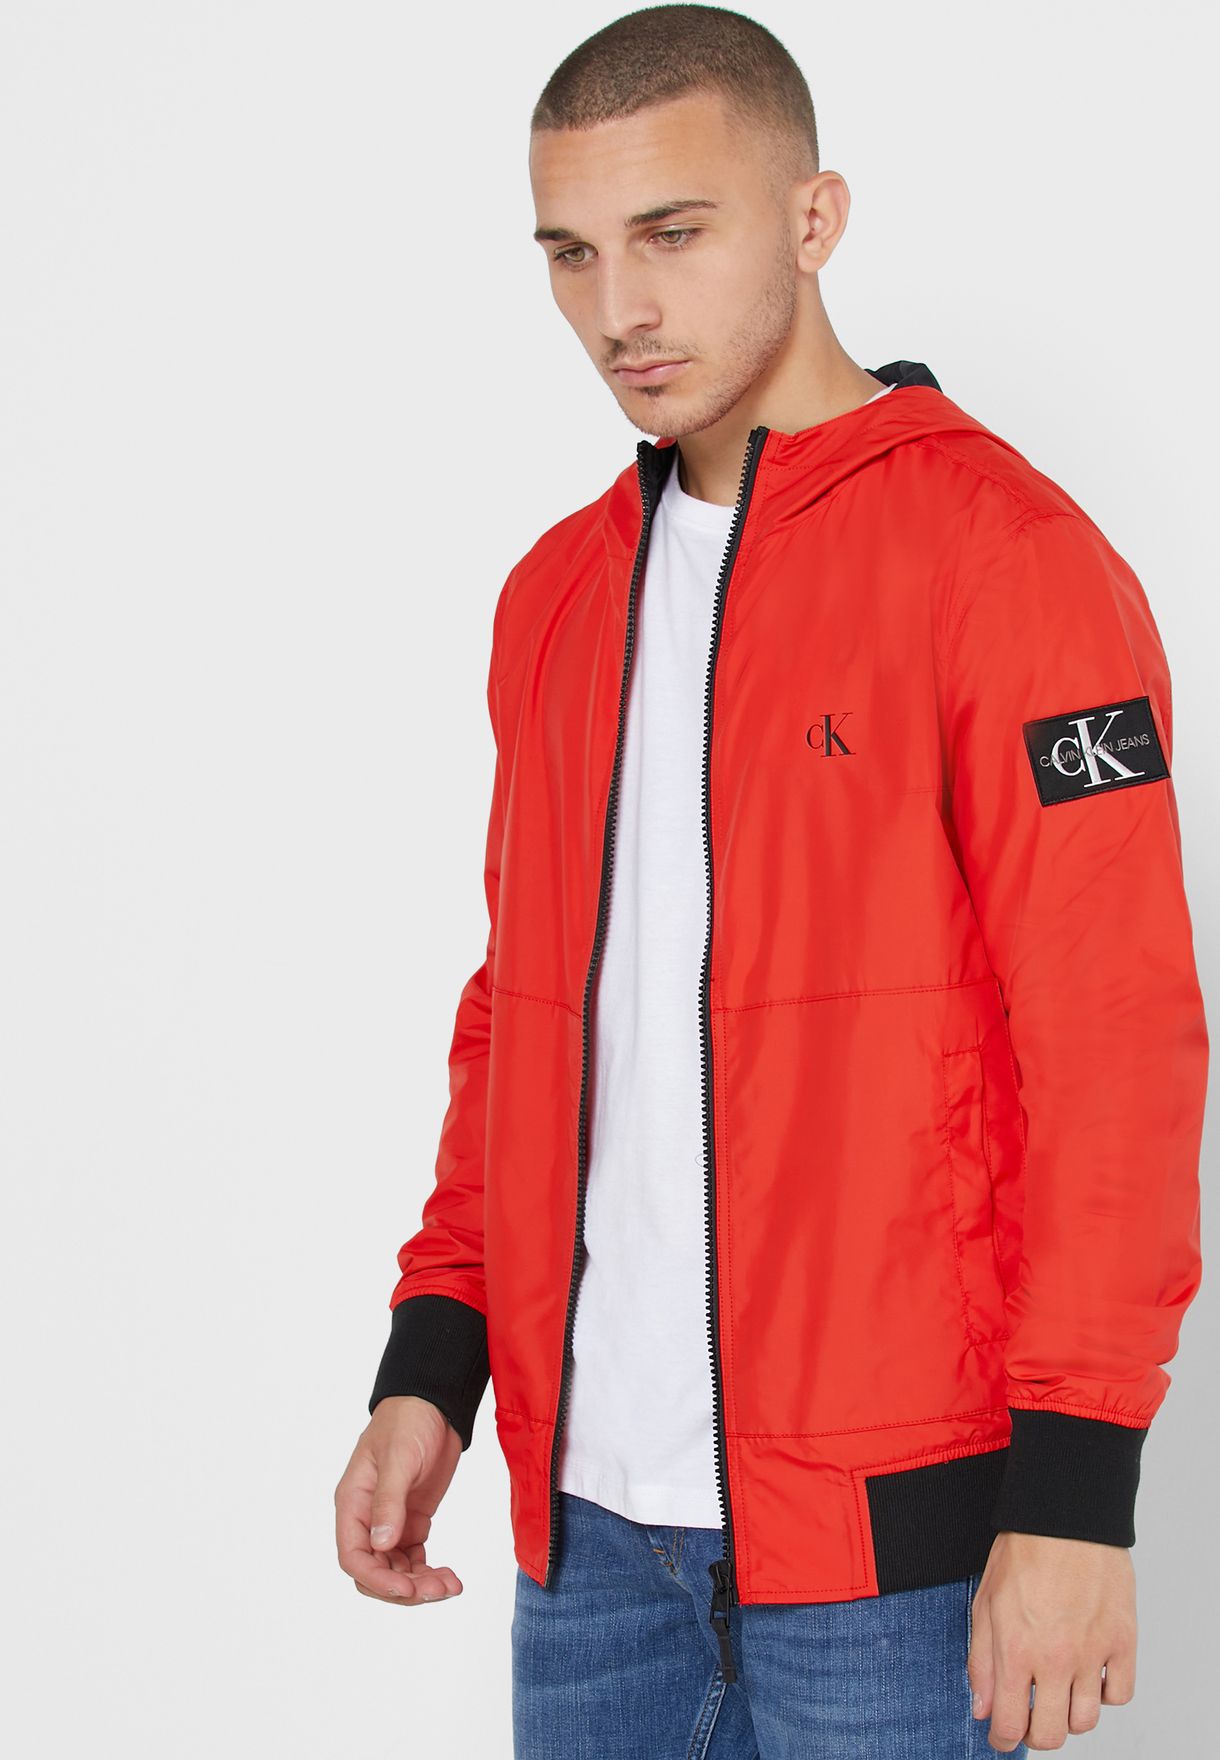 Red Calvin Klein Jacket Flash Sales, SAVE 60%.